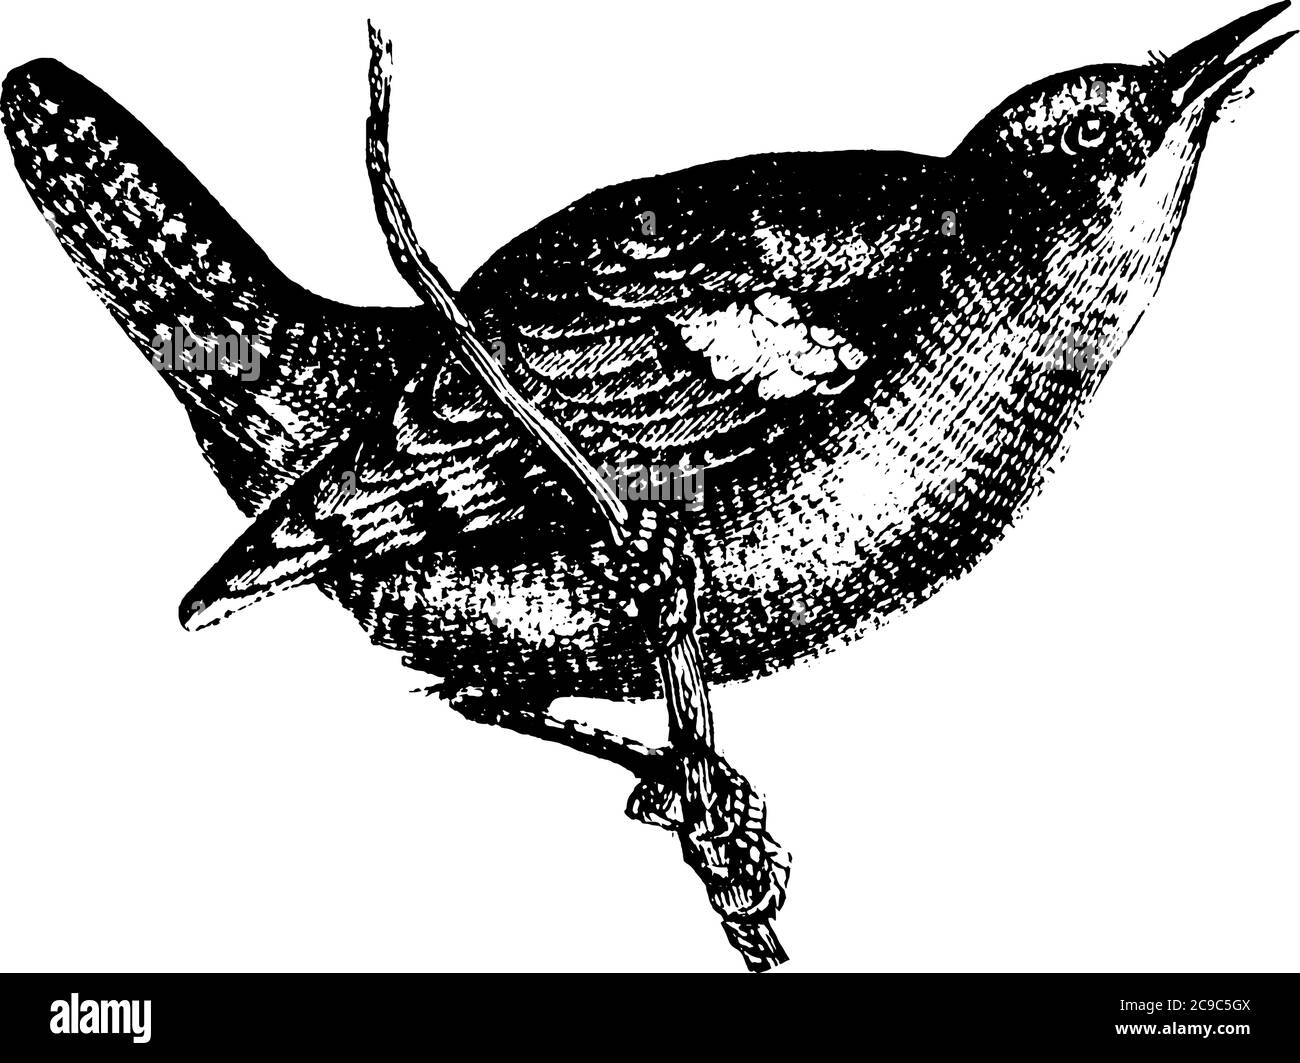 Les petits oiseaux de passereau avec des bills légèrement décriés, comme les oiseaux-Robin, considérés comme un oiseau sacré. Voici un oiseau de Wren, assis sur le soutien-gorge Illustration de Vecteur